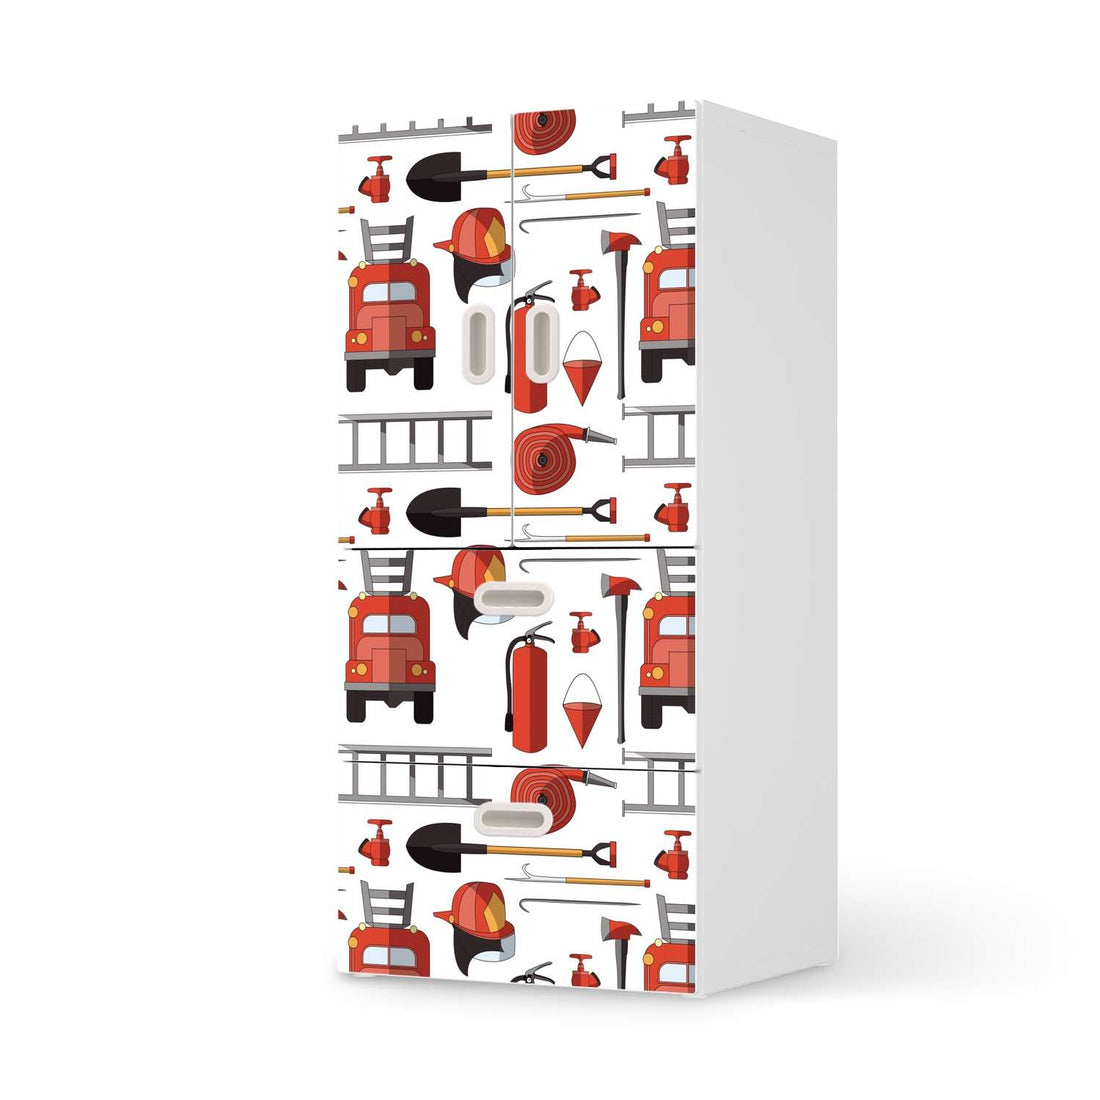 Möbelfolie Firefighter - IKEA Stuva / Fritids kombiniert - 2 Schubladen und 2 kleine Türen  - weiss